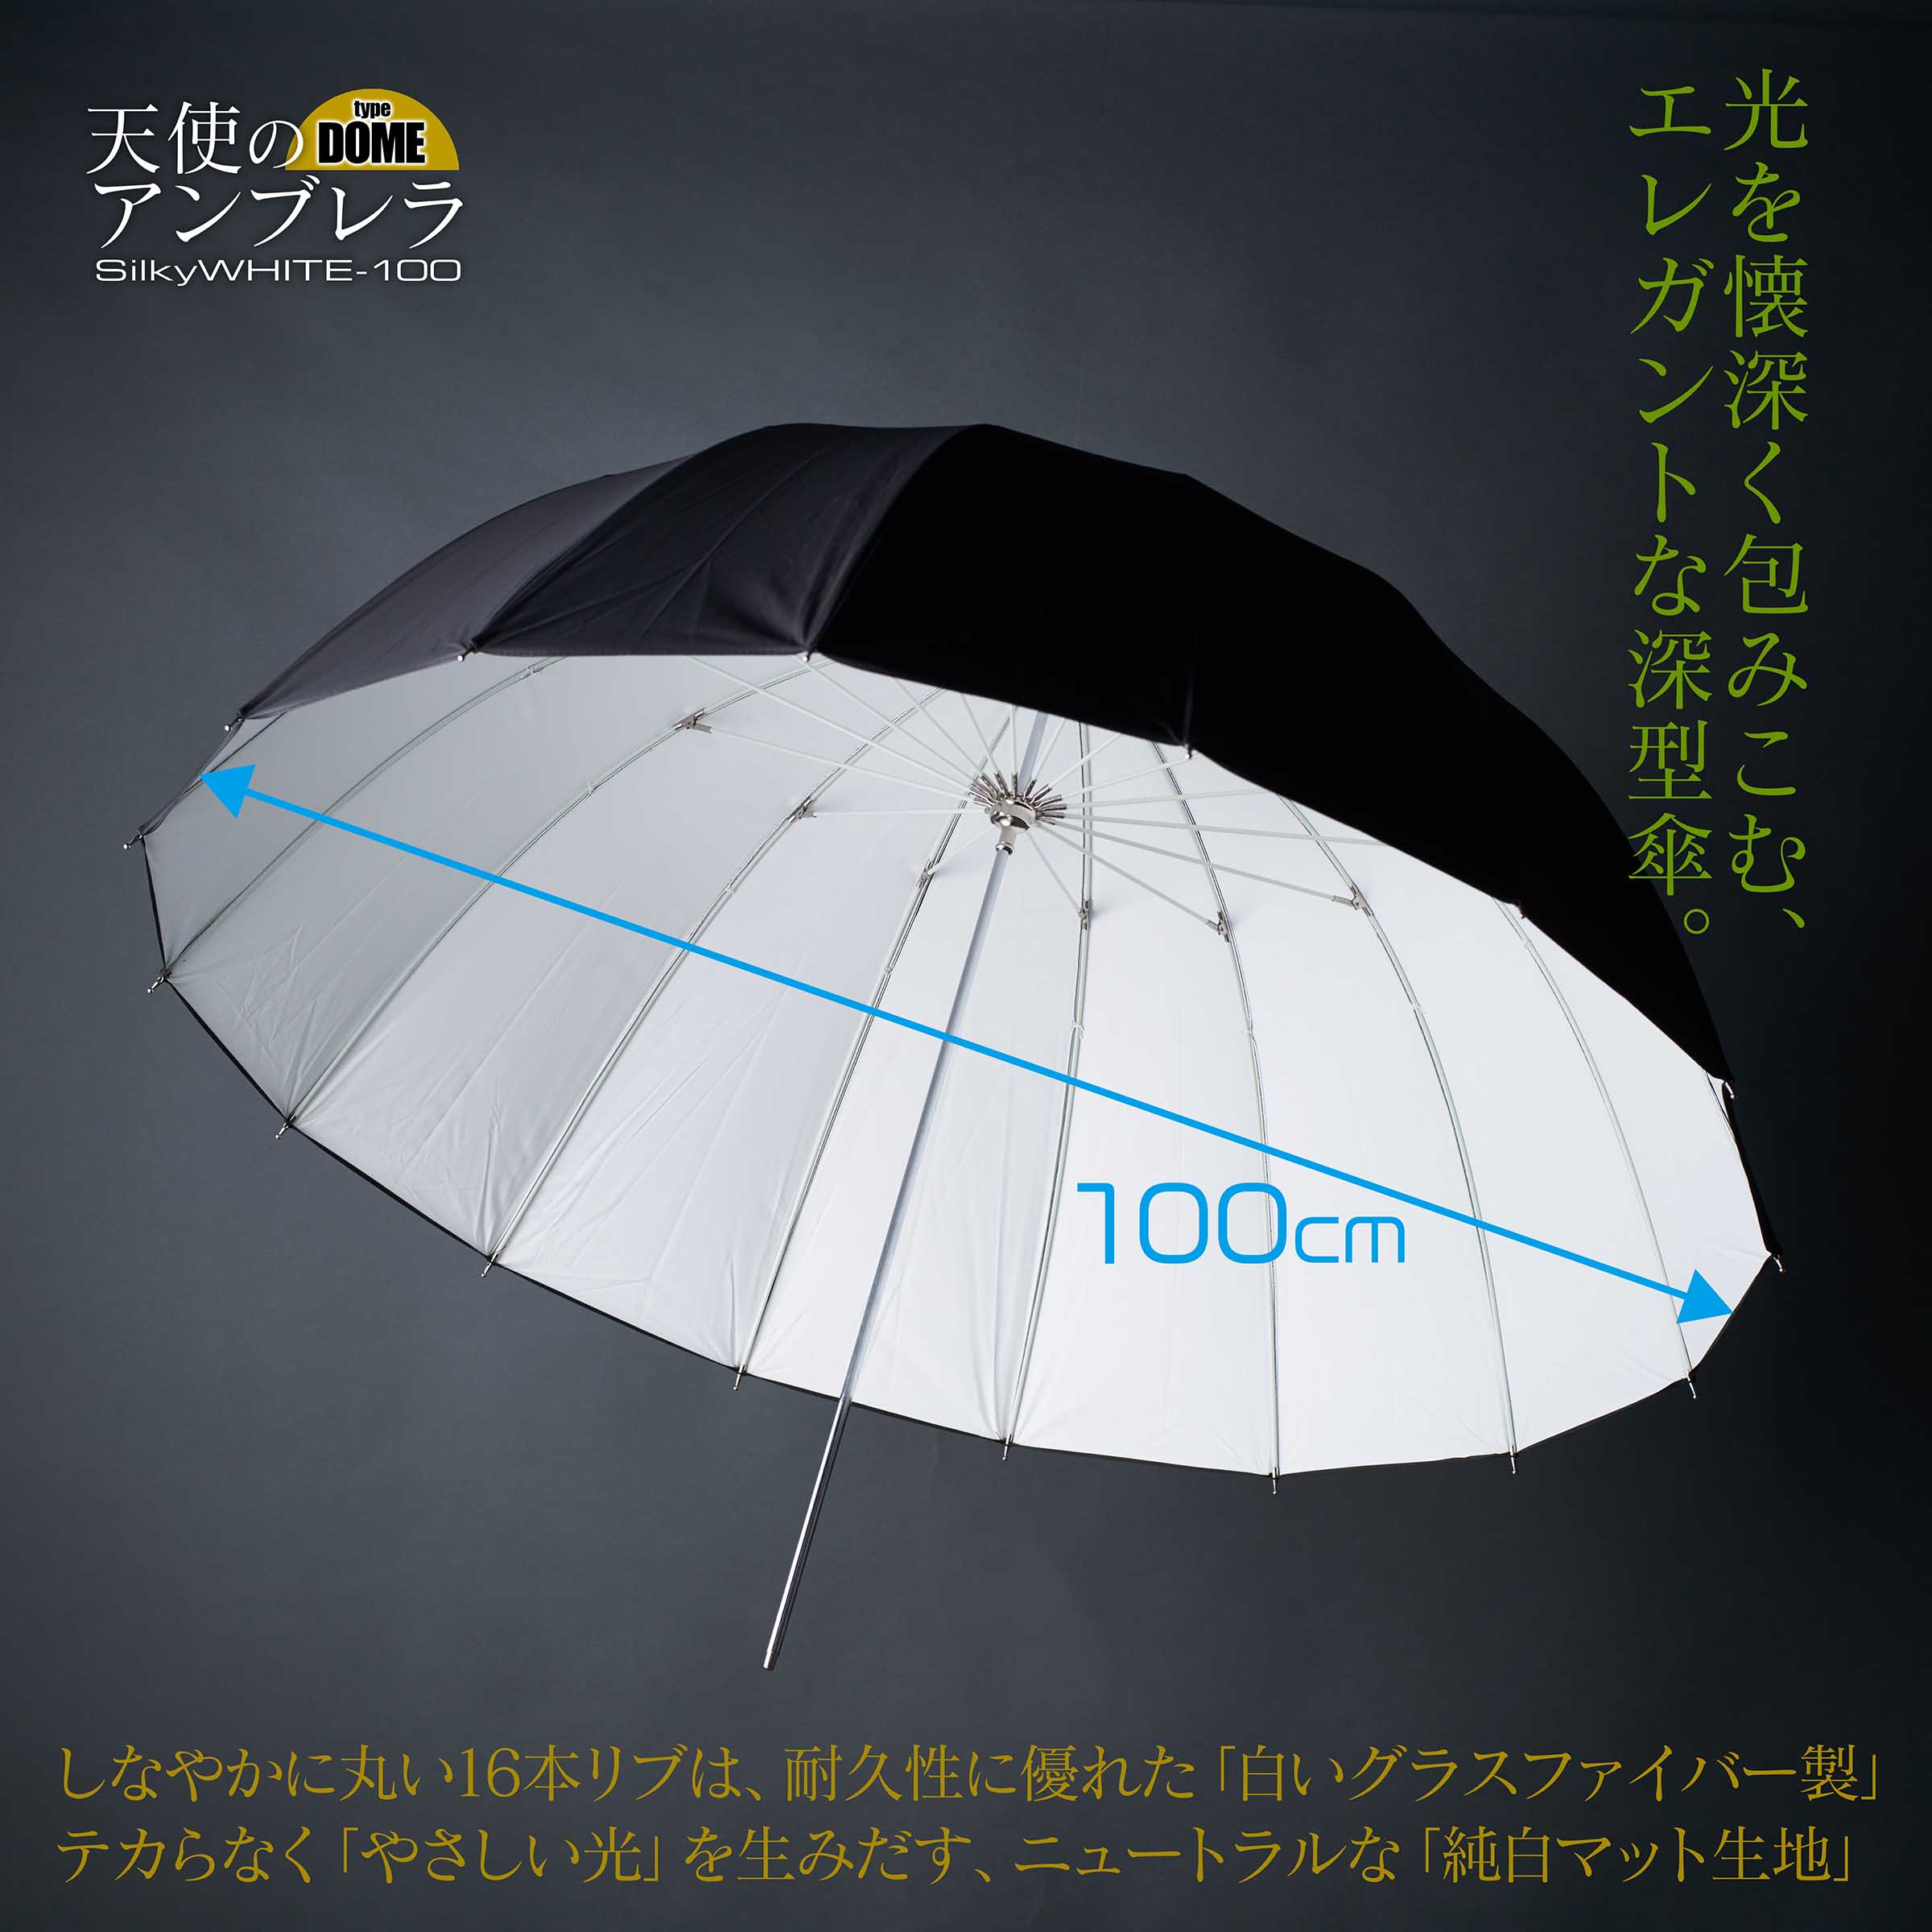 新”深型白傘！天使のアンブレラ Silky WHITE-100【type DOME】が出たよ 